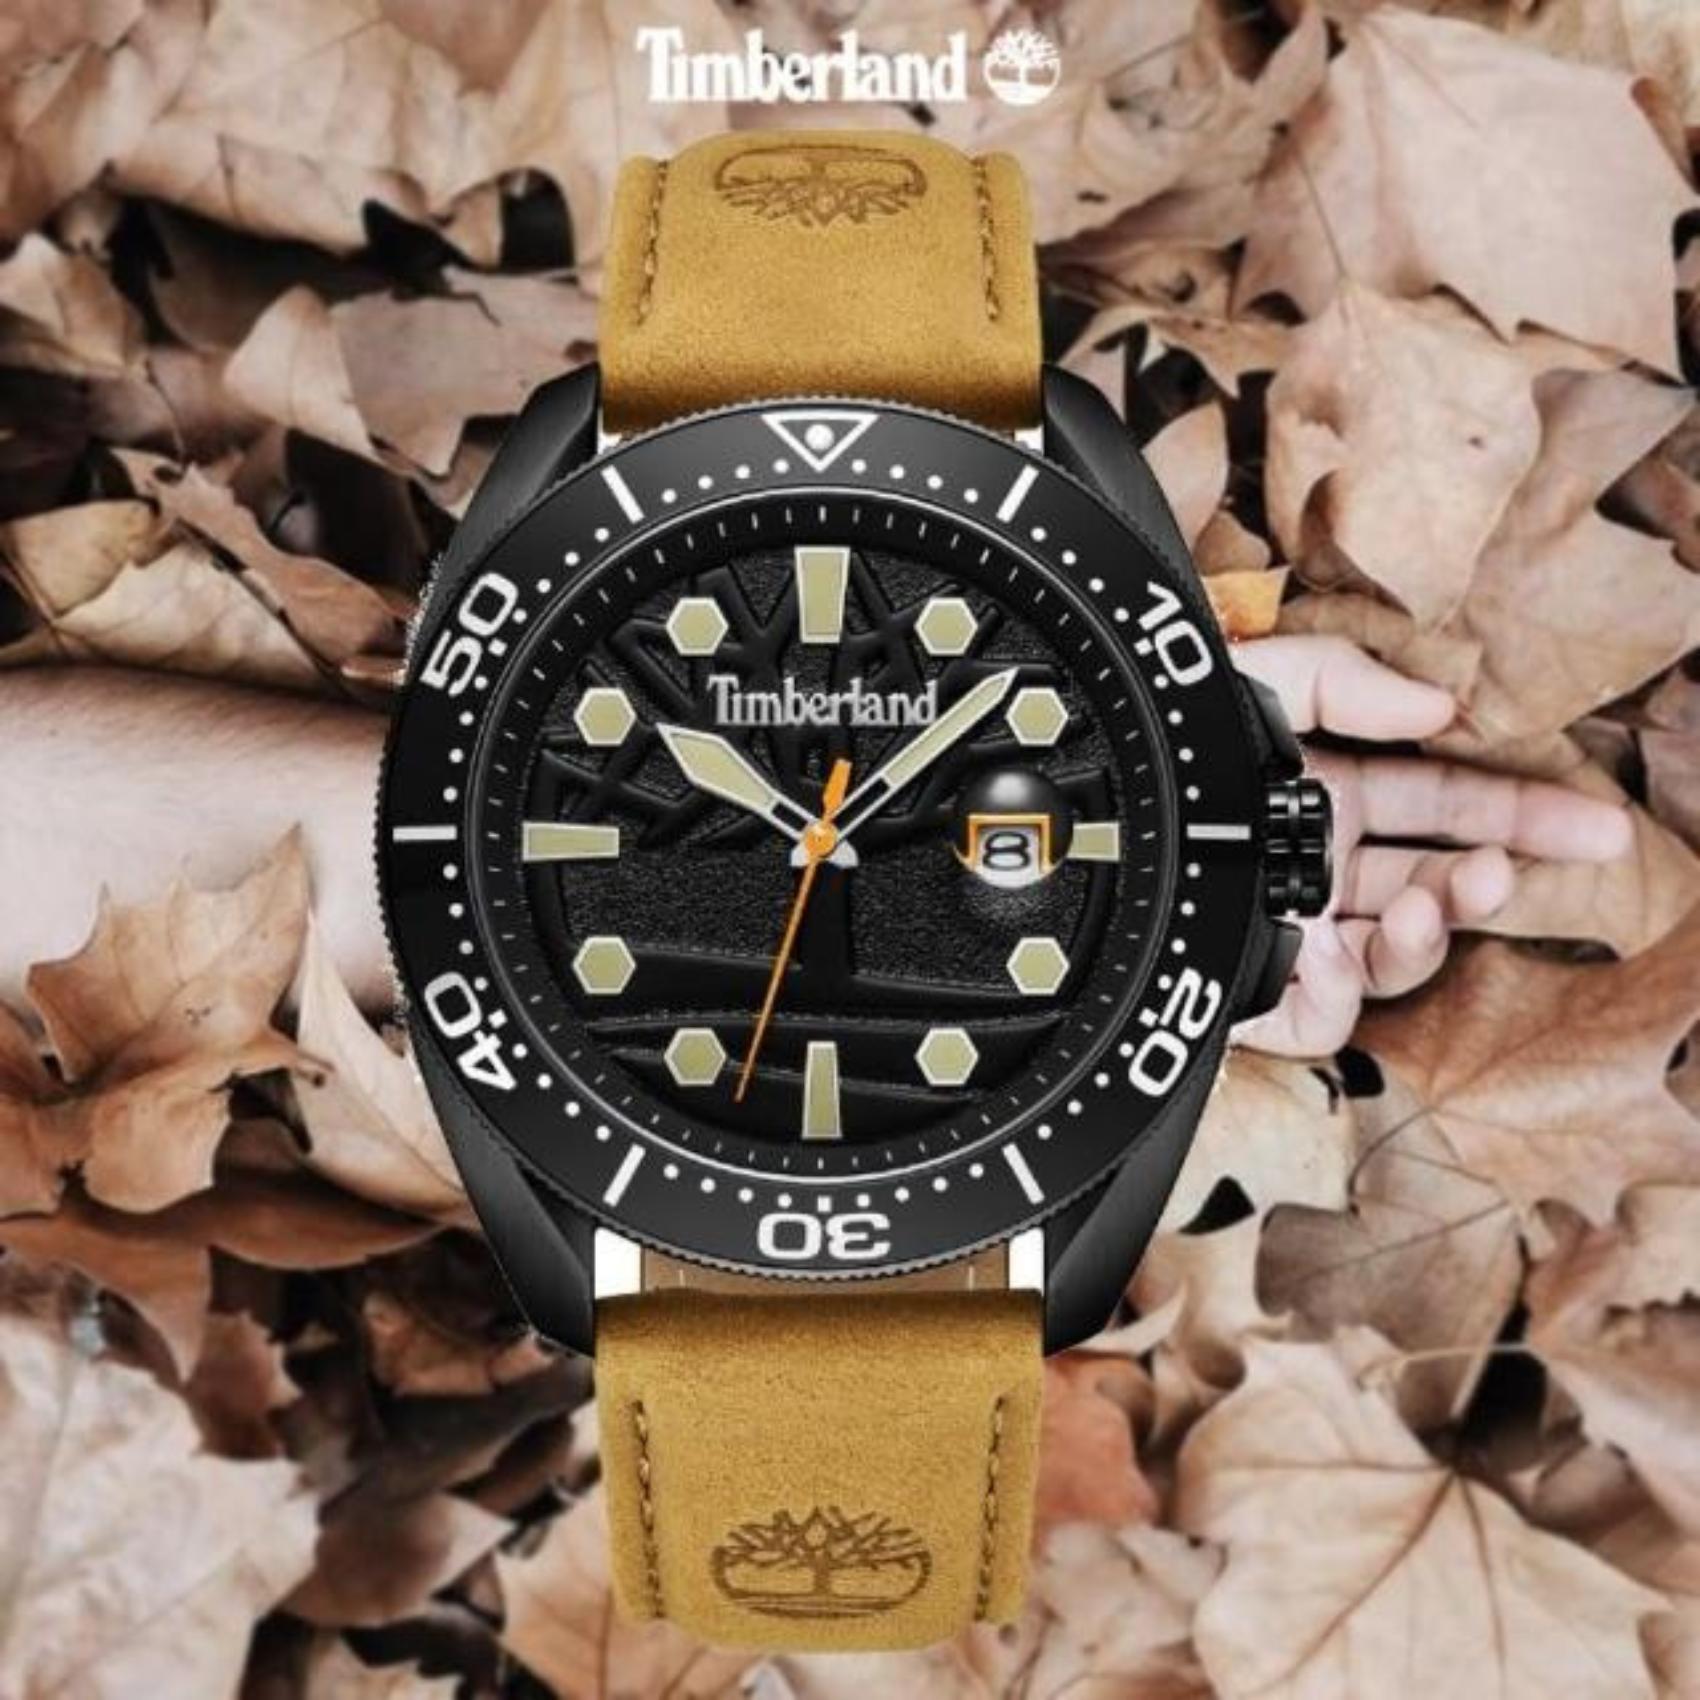 Ανδρικό ρολόι Timberland Carrigan TDWGB2230601 με ταμπά δερμάτινο λουράκι και μαύρο καντράν διαμέτρου 44mm με ένδειξη ημερομηνίας.